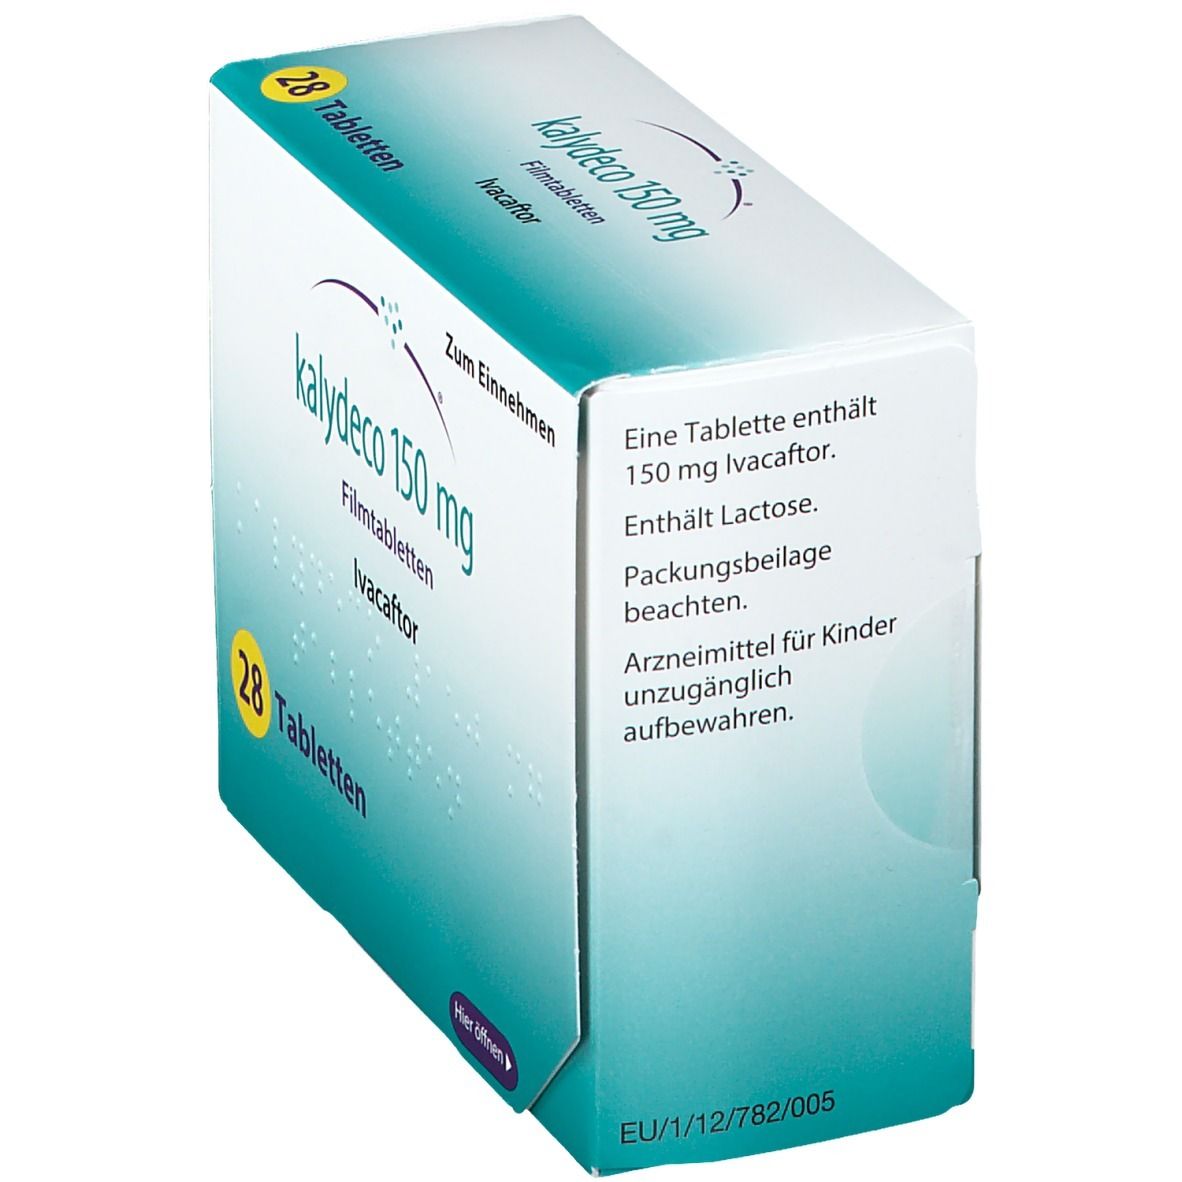 KALYDECO 150 mg Filmtabletten